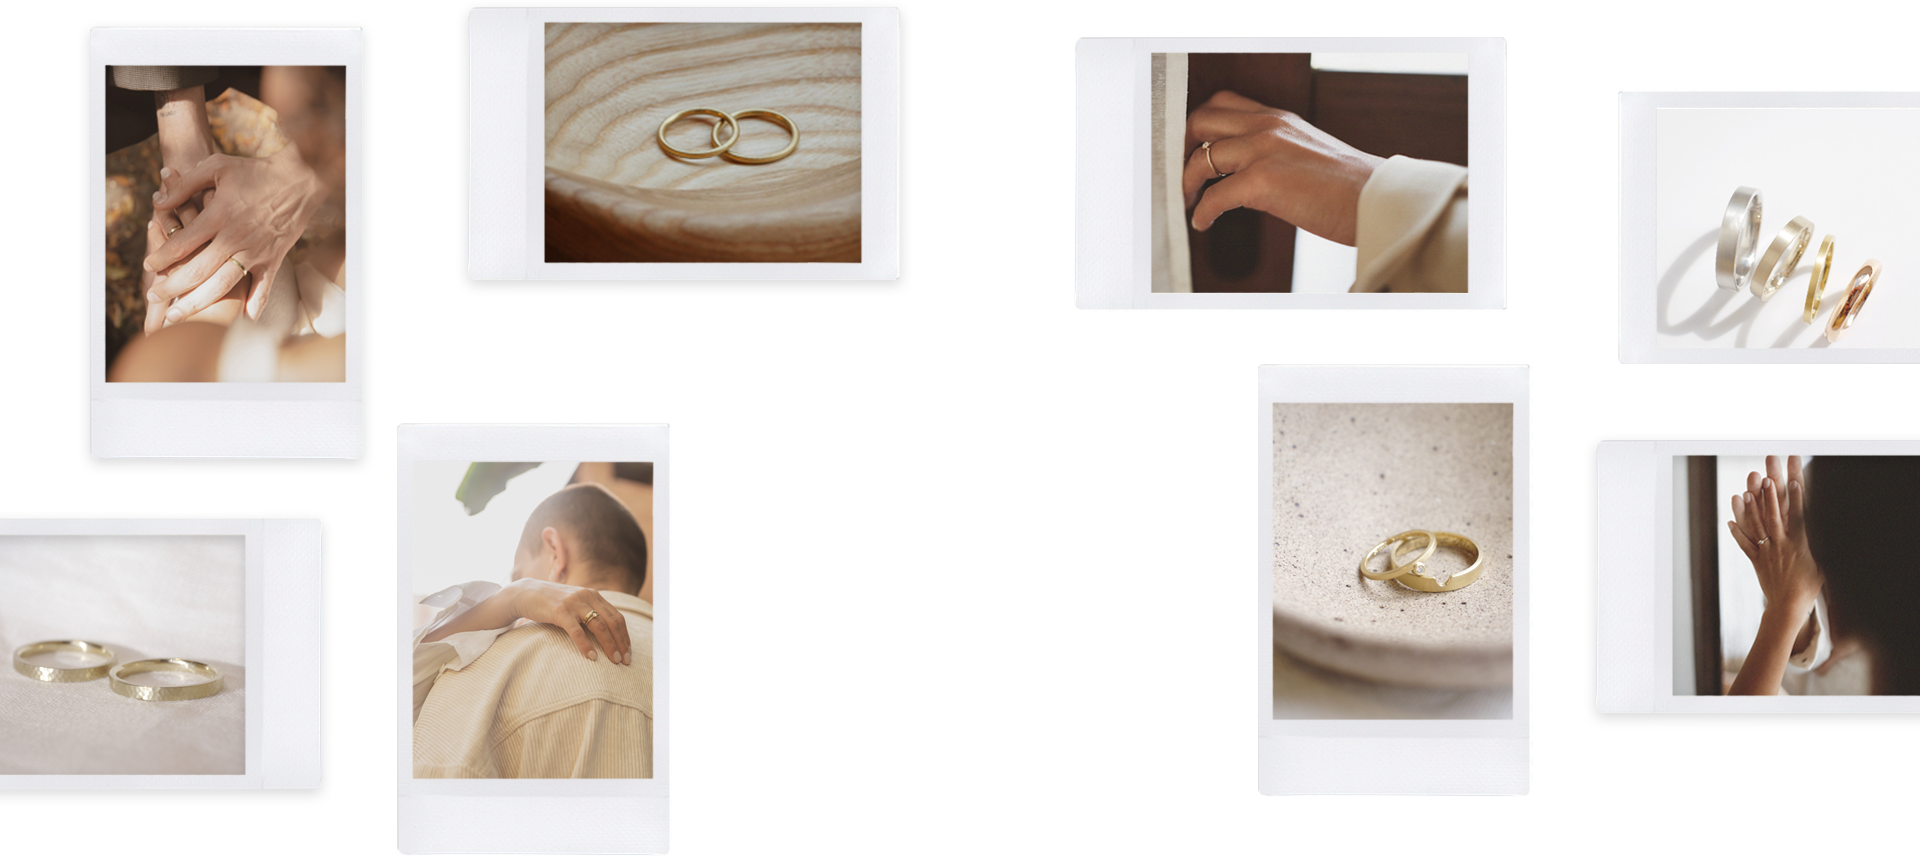 fotos polaroid de alianças de casamento feitas à mão em ouro 18k com design minimalisa em diversos modelos e tonalidades e texturas, mãos usando anéis de noivado em ouro 18k com diamantes